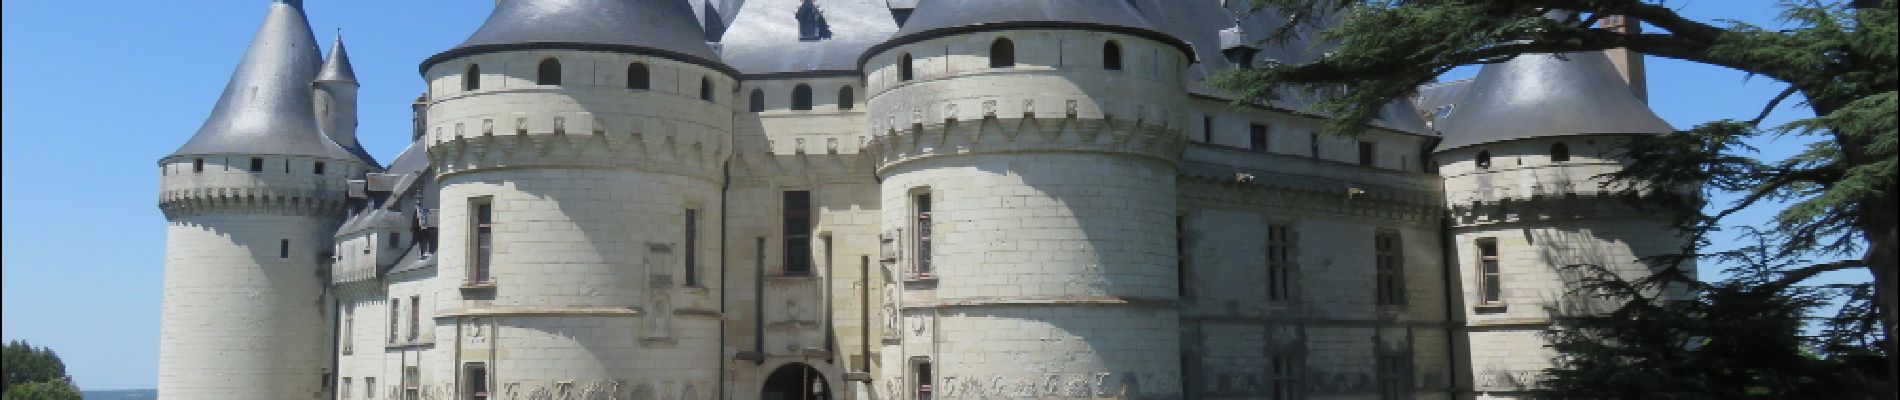 Point d'intérêt Chaumont-sur-Loire - Chateau de Chaumont - Photo